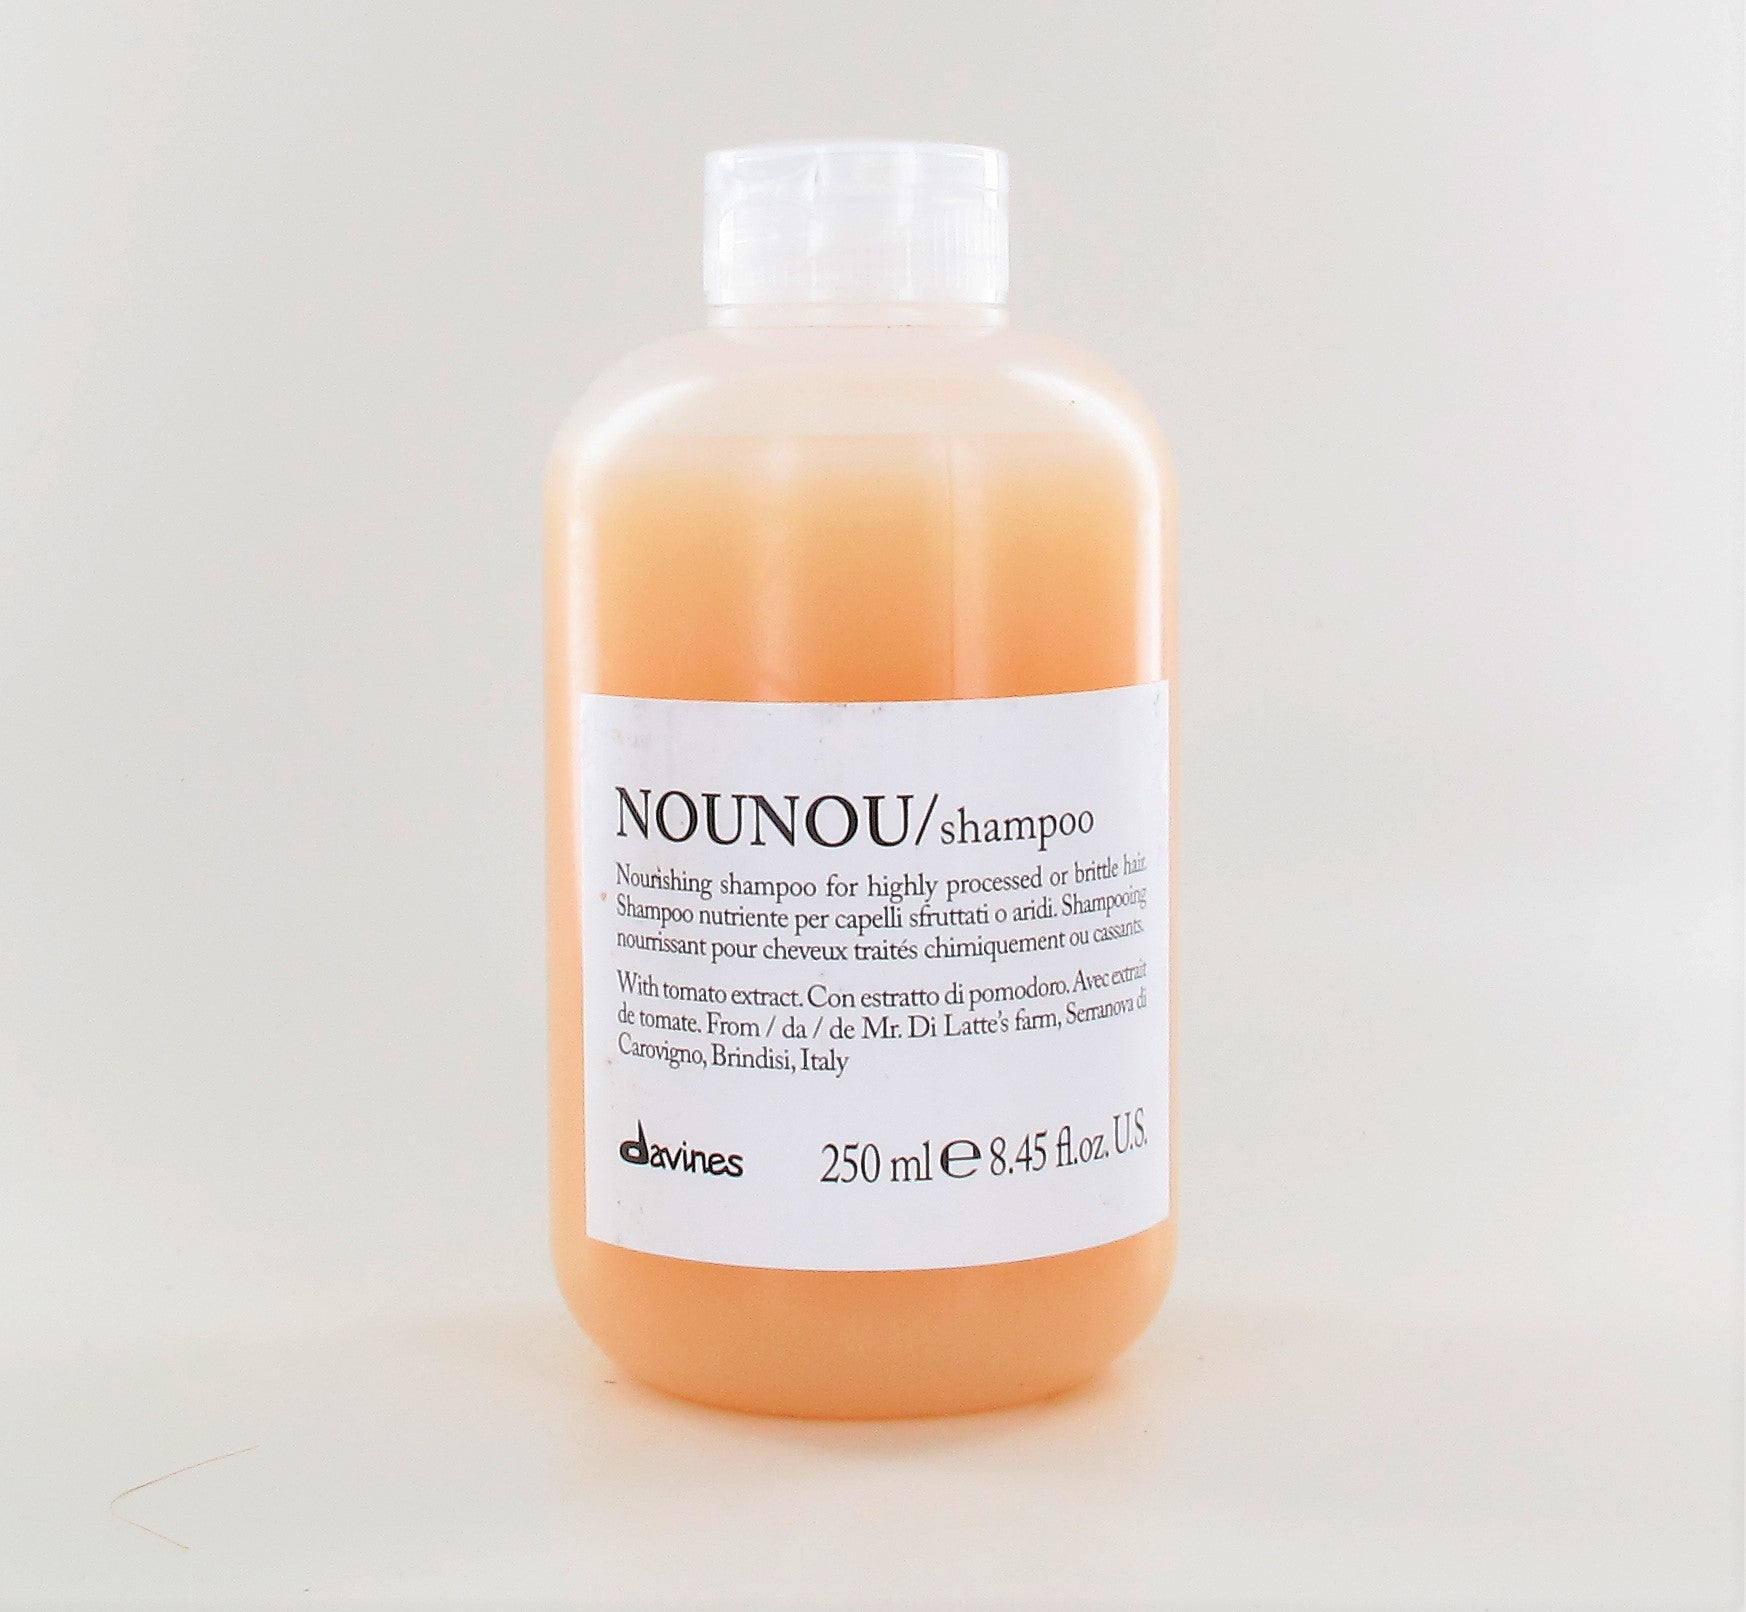 Davines NouNou Shampoo 8.45 oz